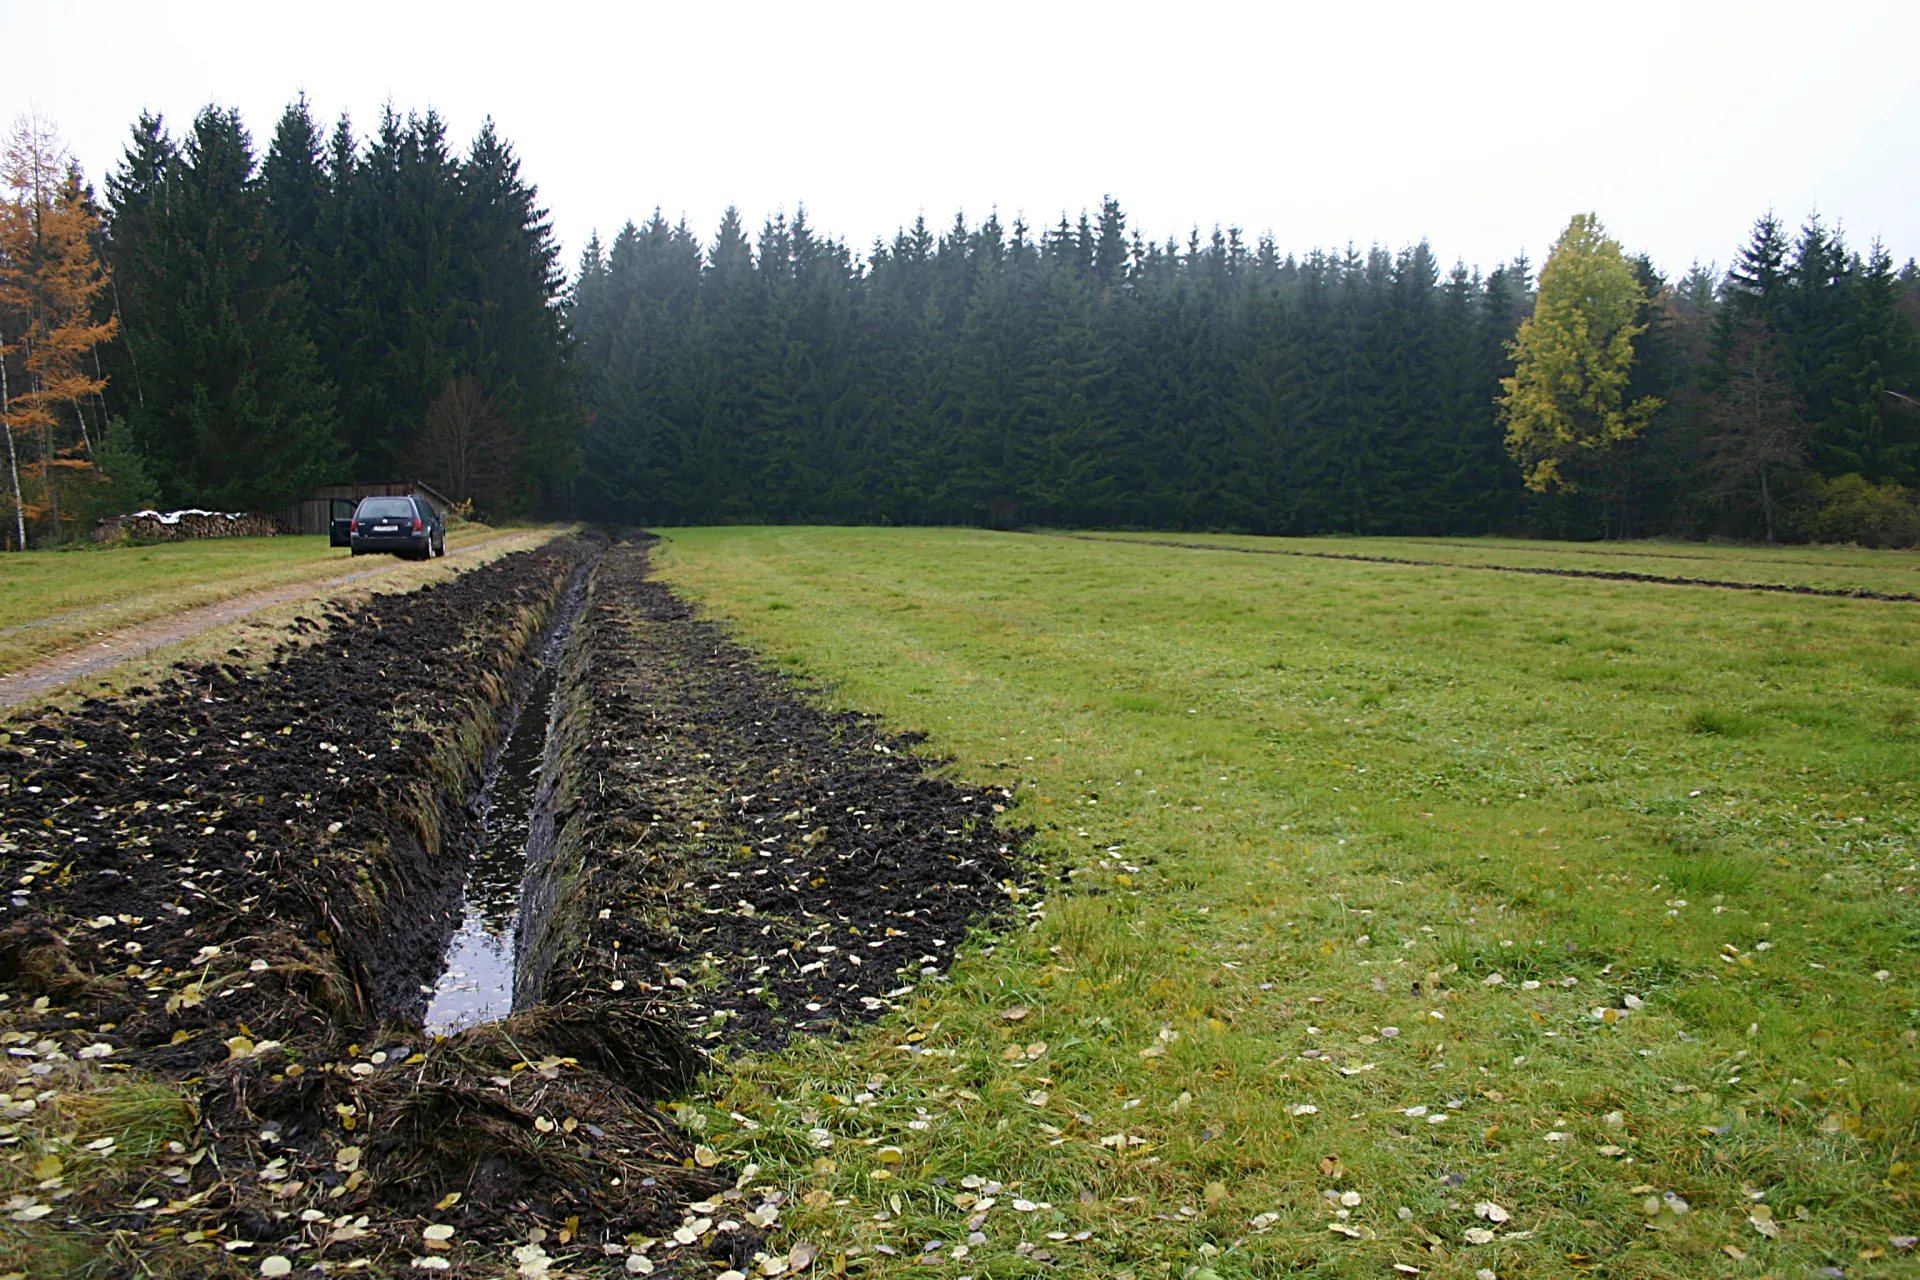 Das Bild zeigt links einen Drängraben im Niedermoor. Im Vergleich zur rechts angrenzenden Wiese ist der Boden des Grabens schwarz und mit Wasser gefüllt. Im Hintergrund steht Wald.